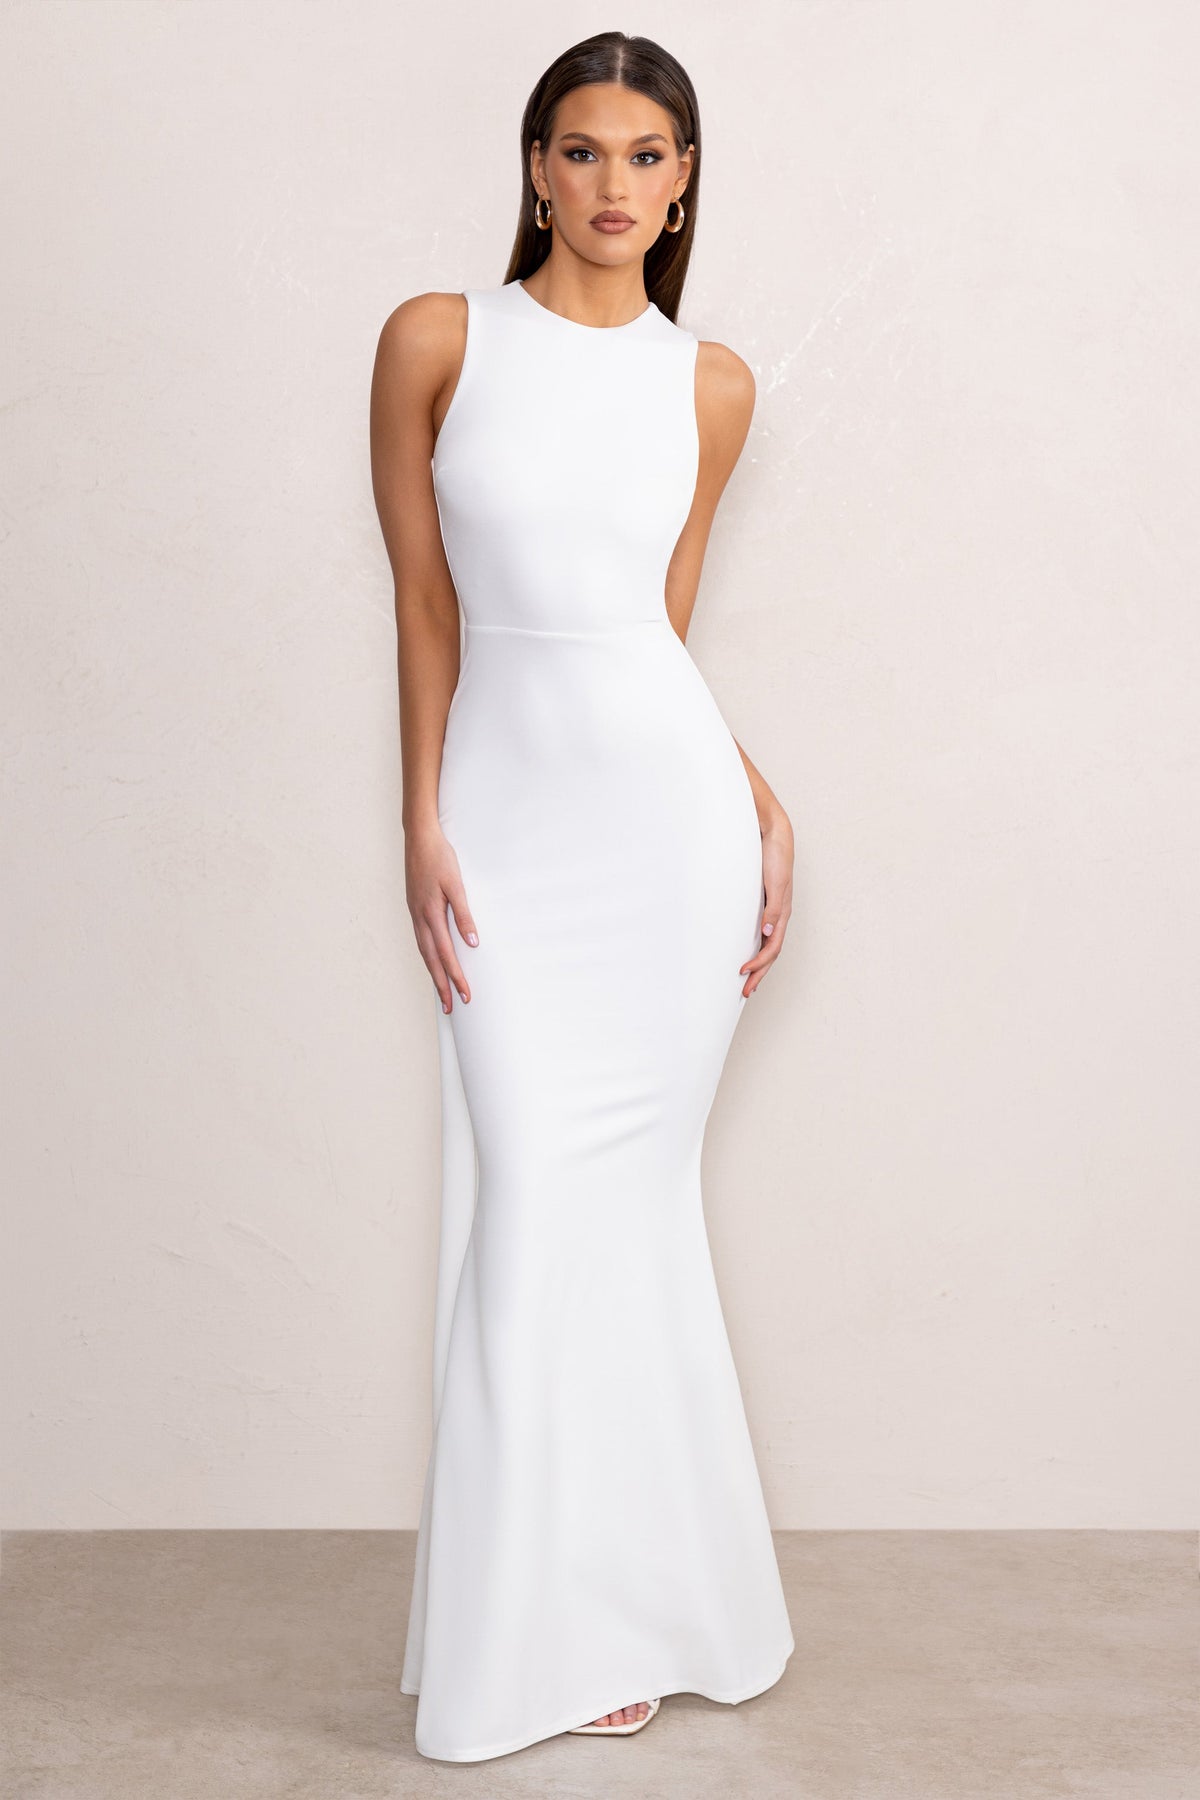 White Dresses for Women for Sale - eBay